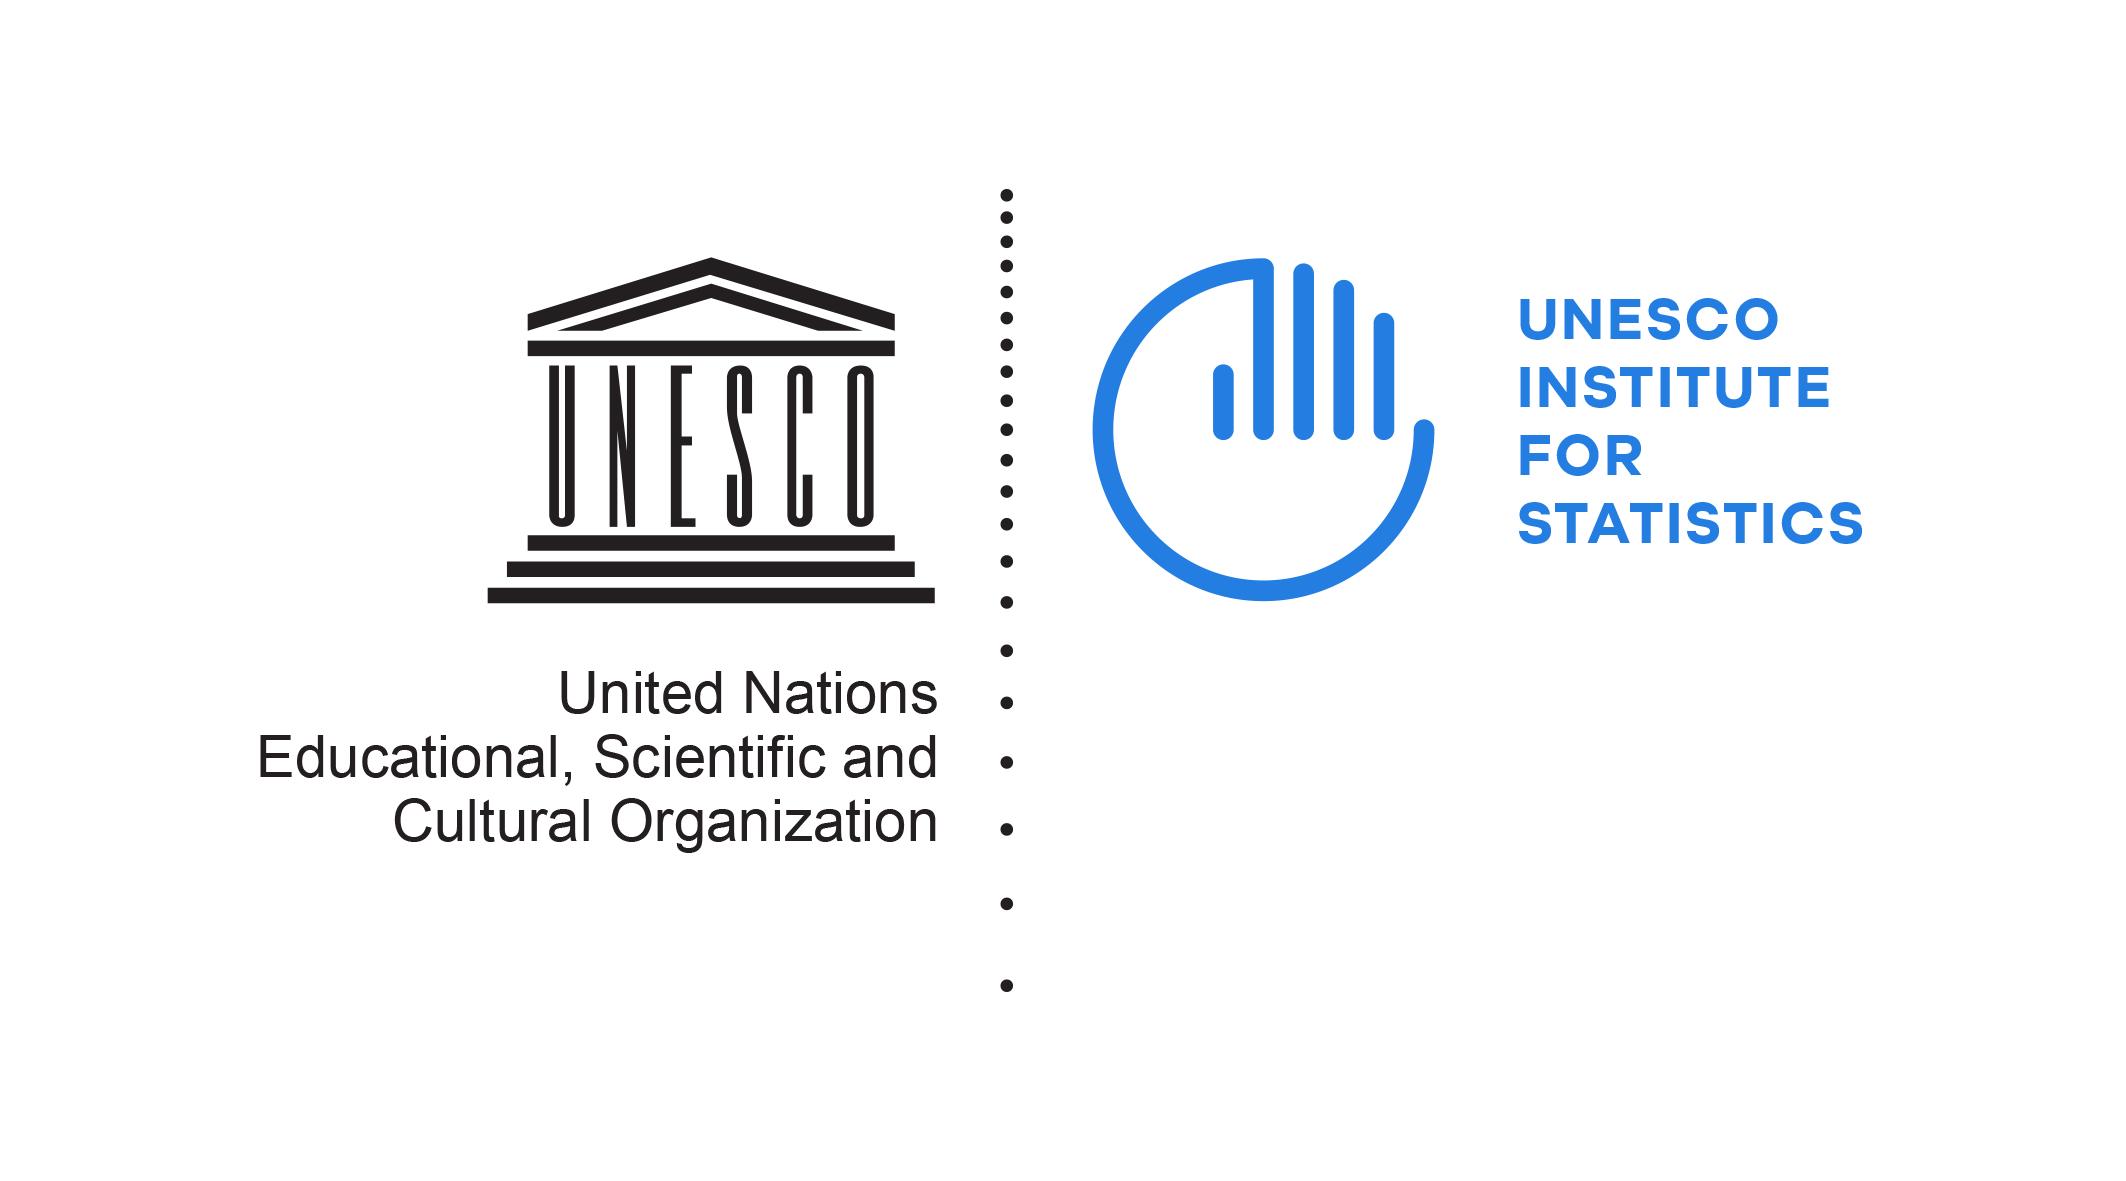 UNESCO - Institute for Statistics